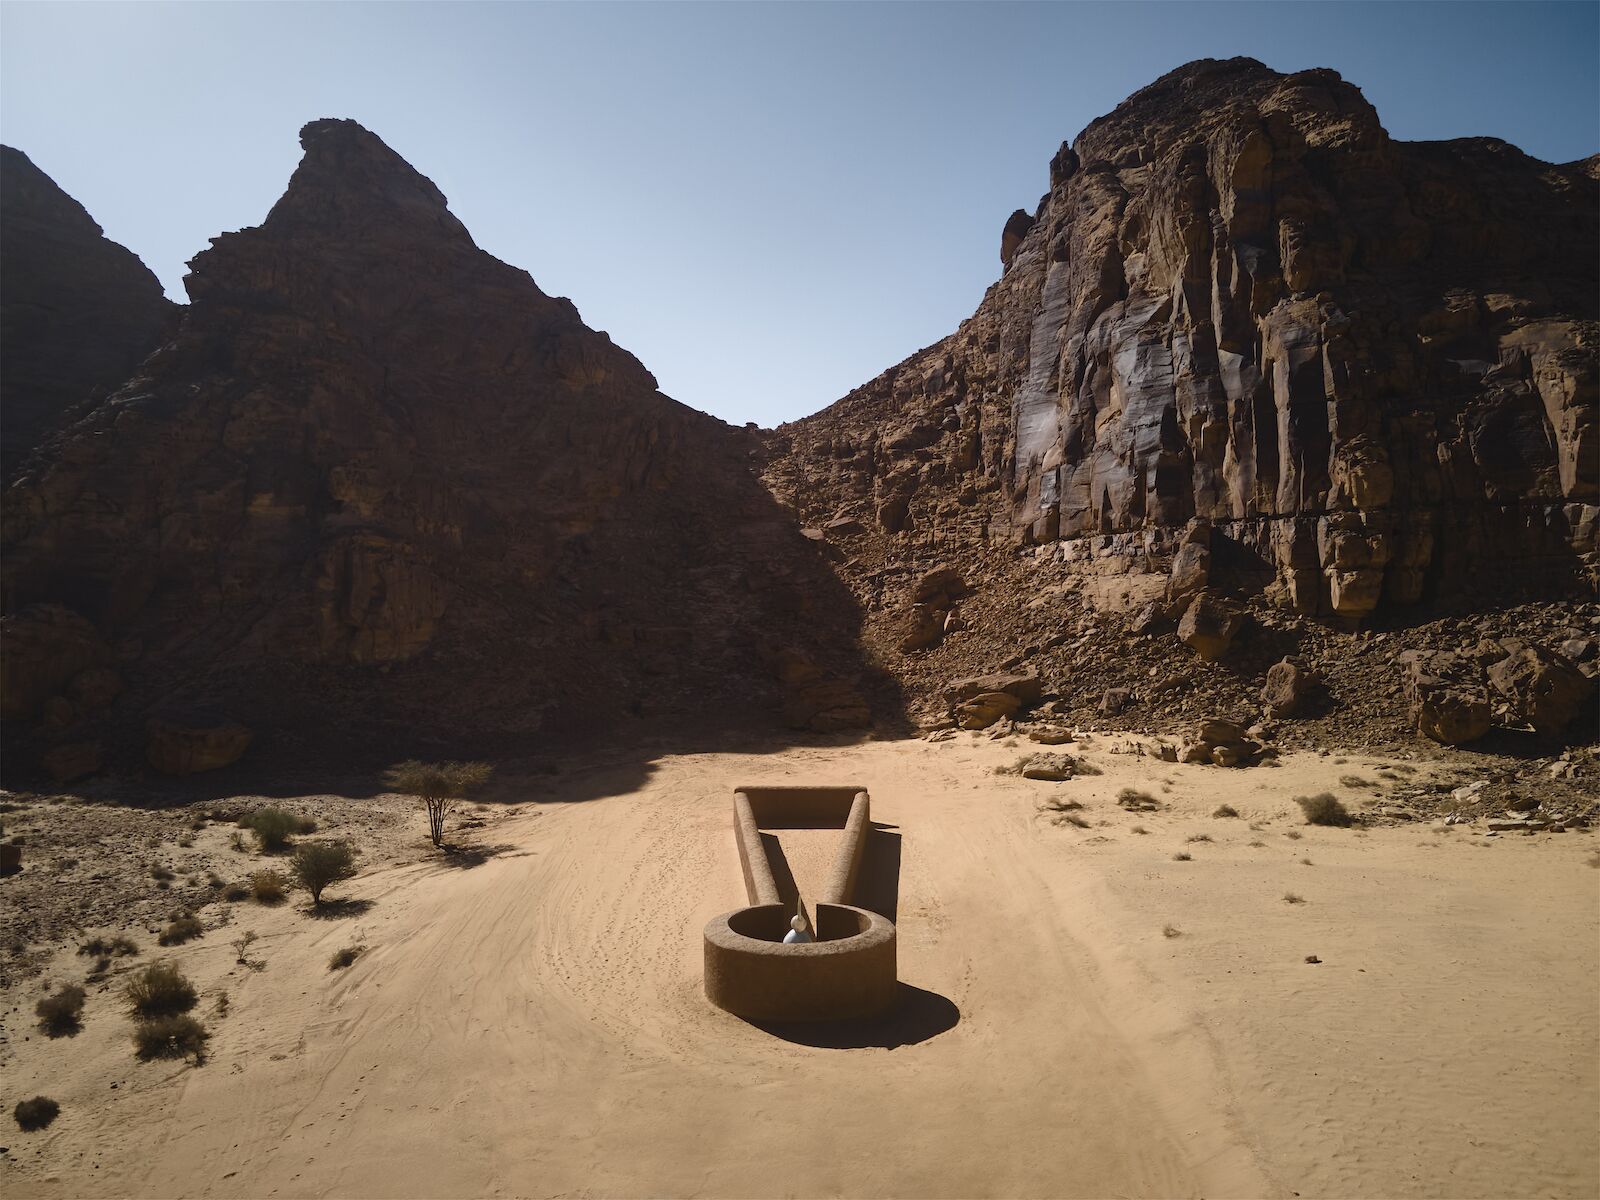 Art installation in the shape of a key hole in the Saudi Arabian desert for Desert X 2022.